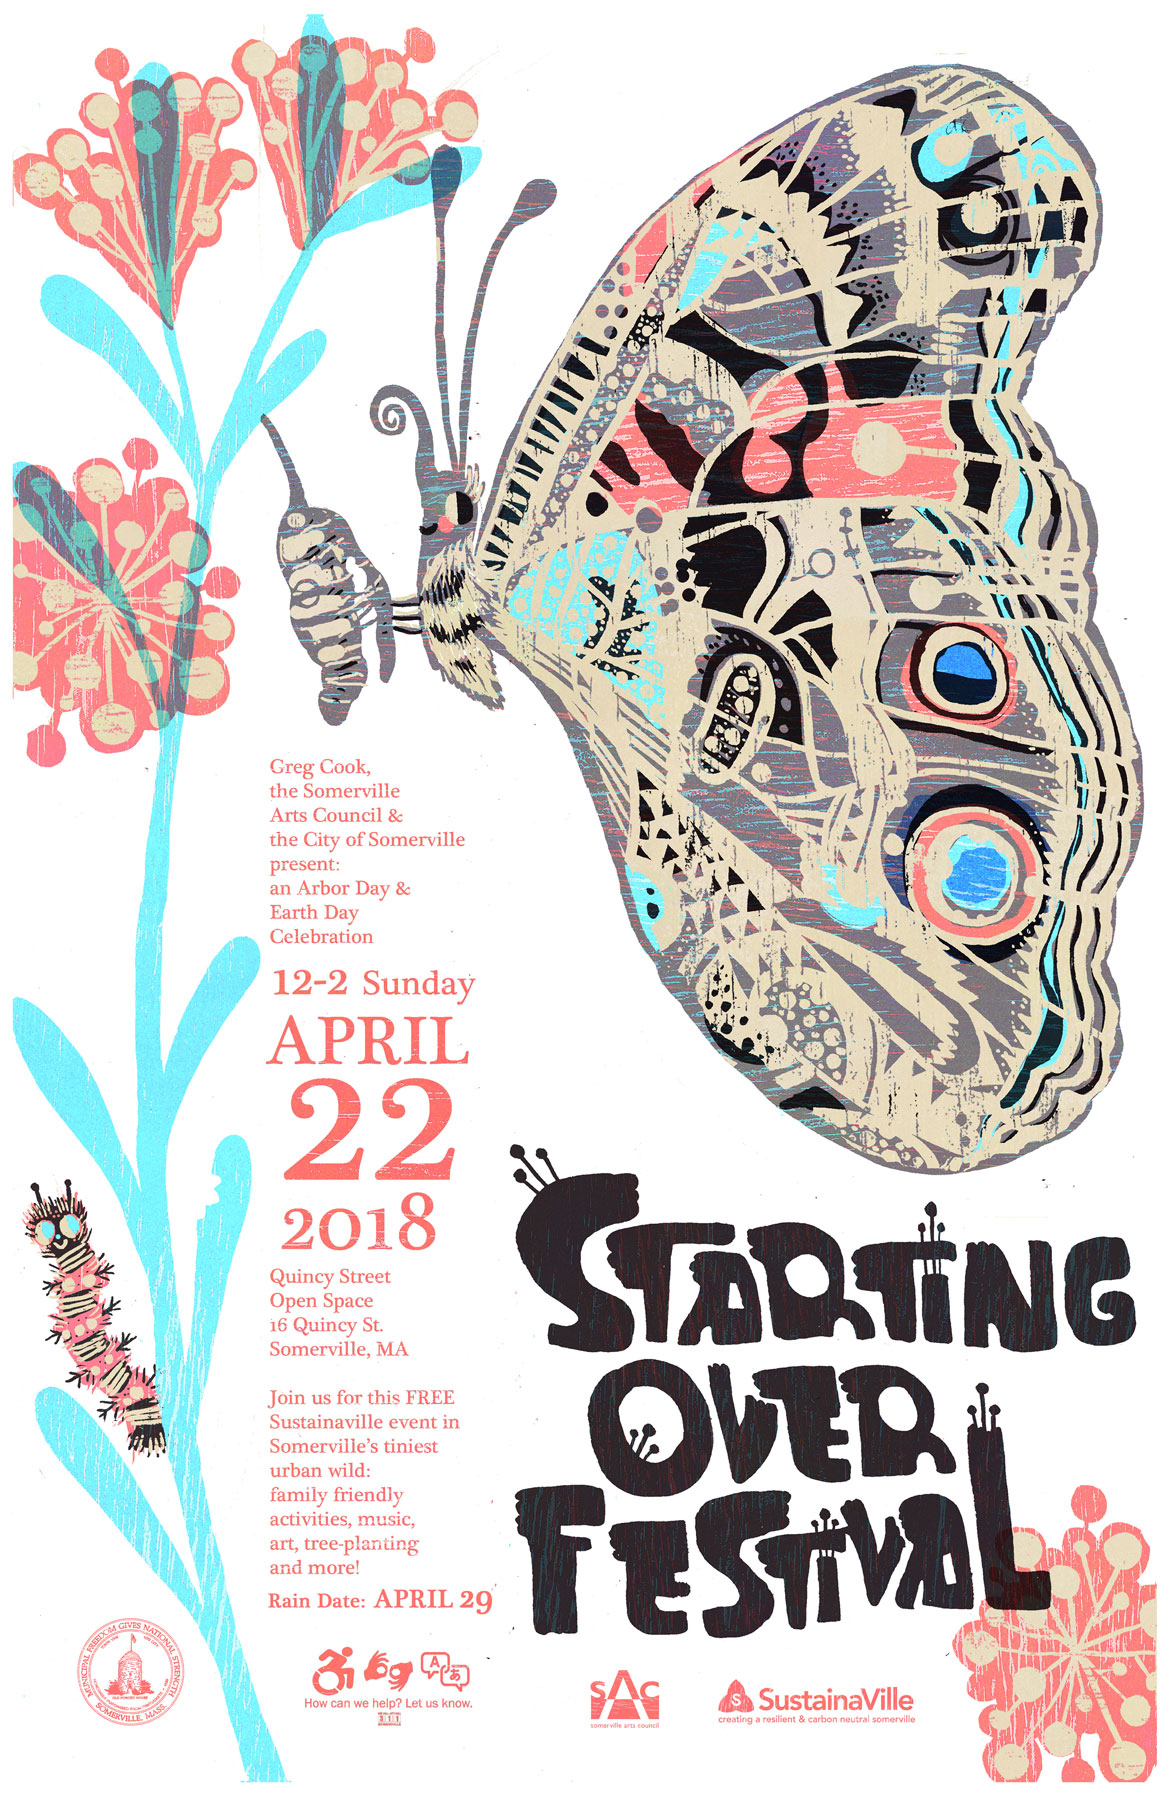 "Starting Over Festival" poster by Kari Percival.